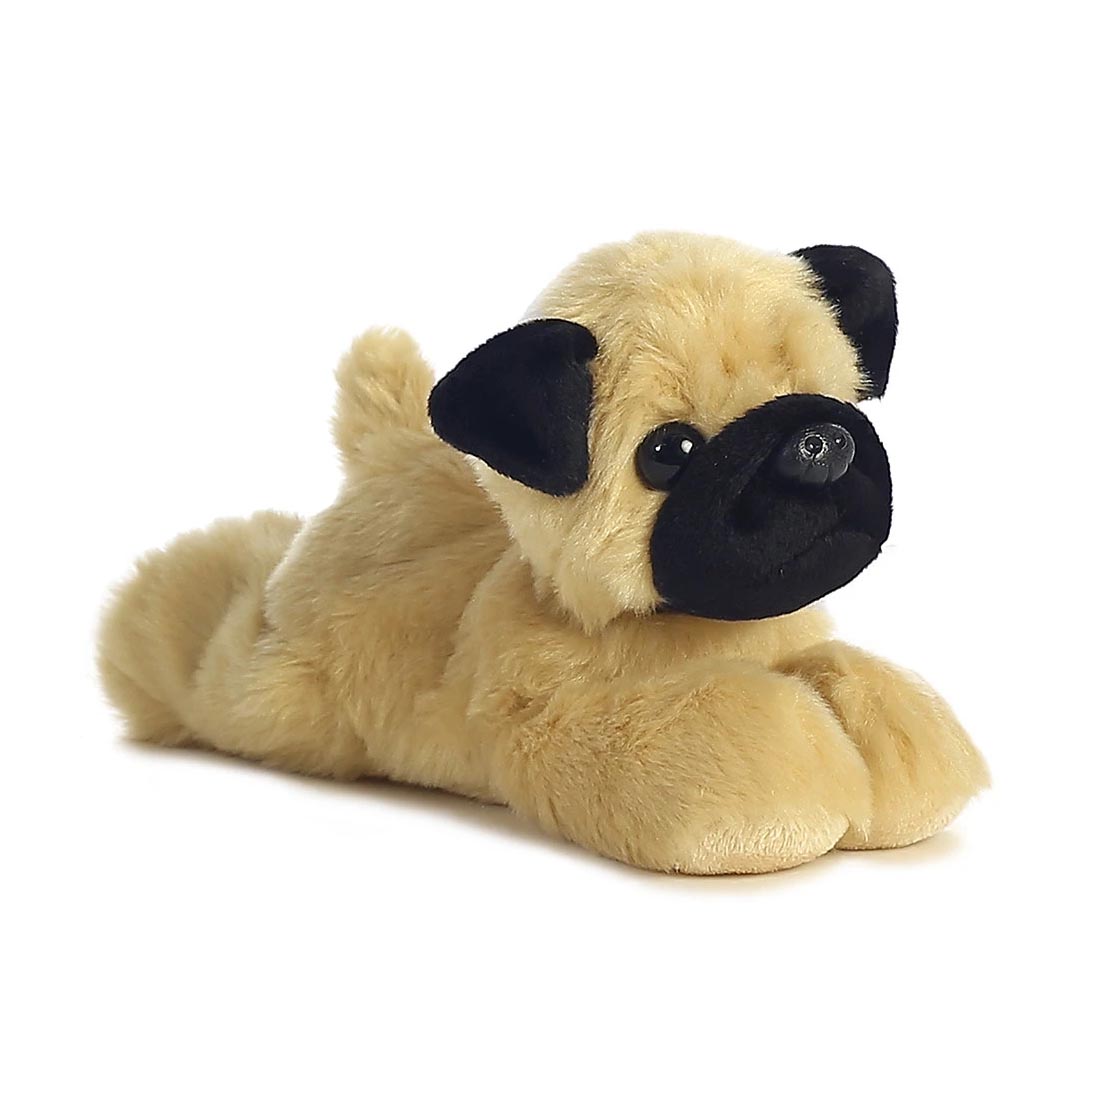 pug dog stuffed animal